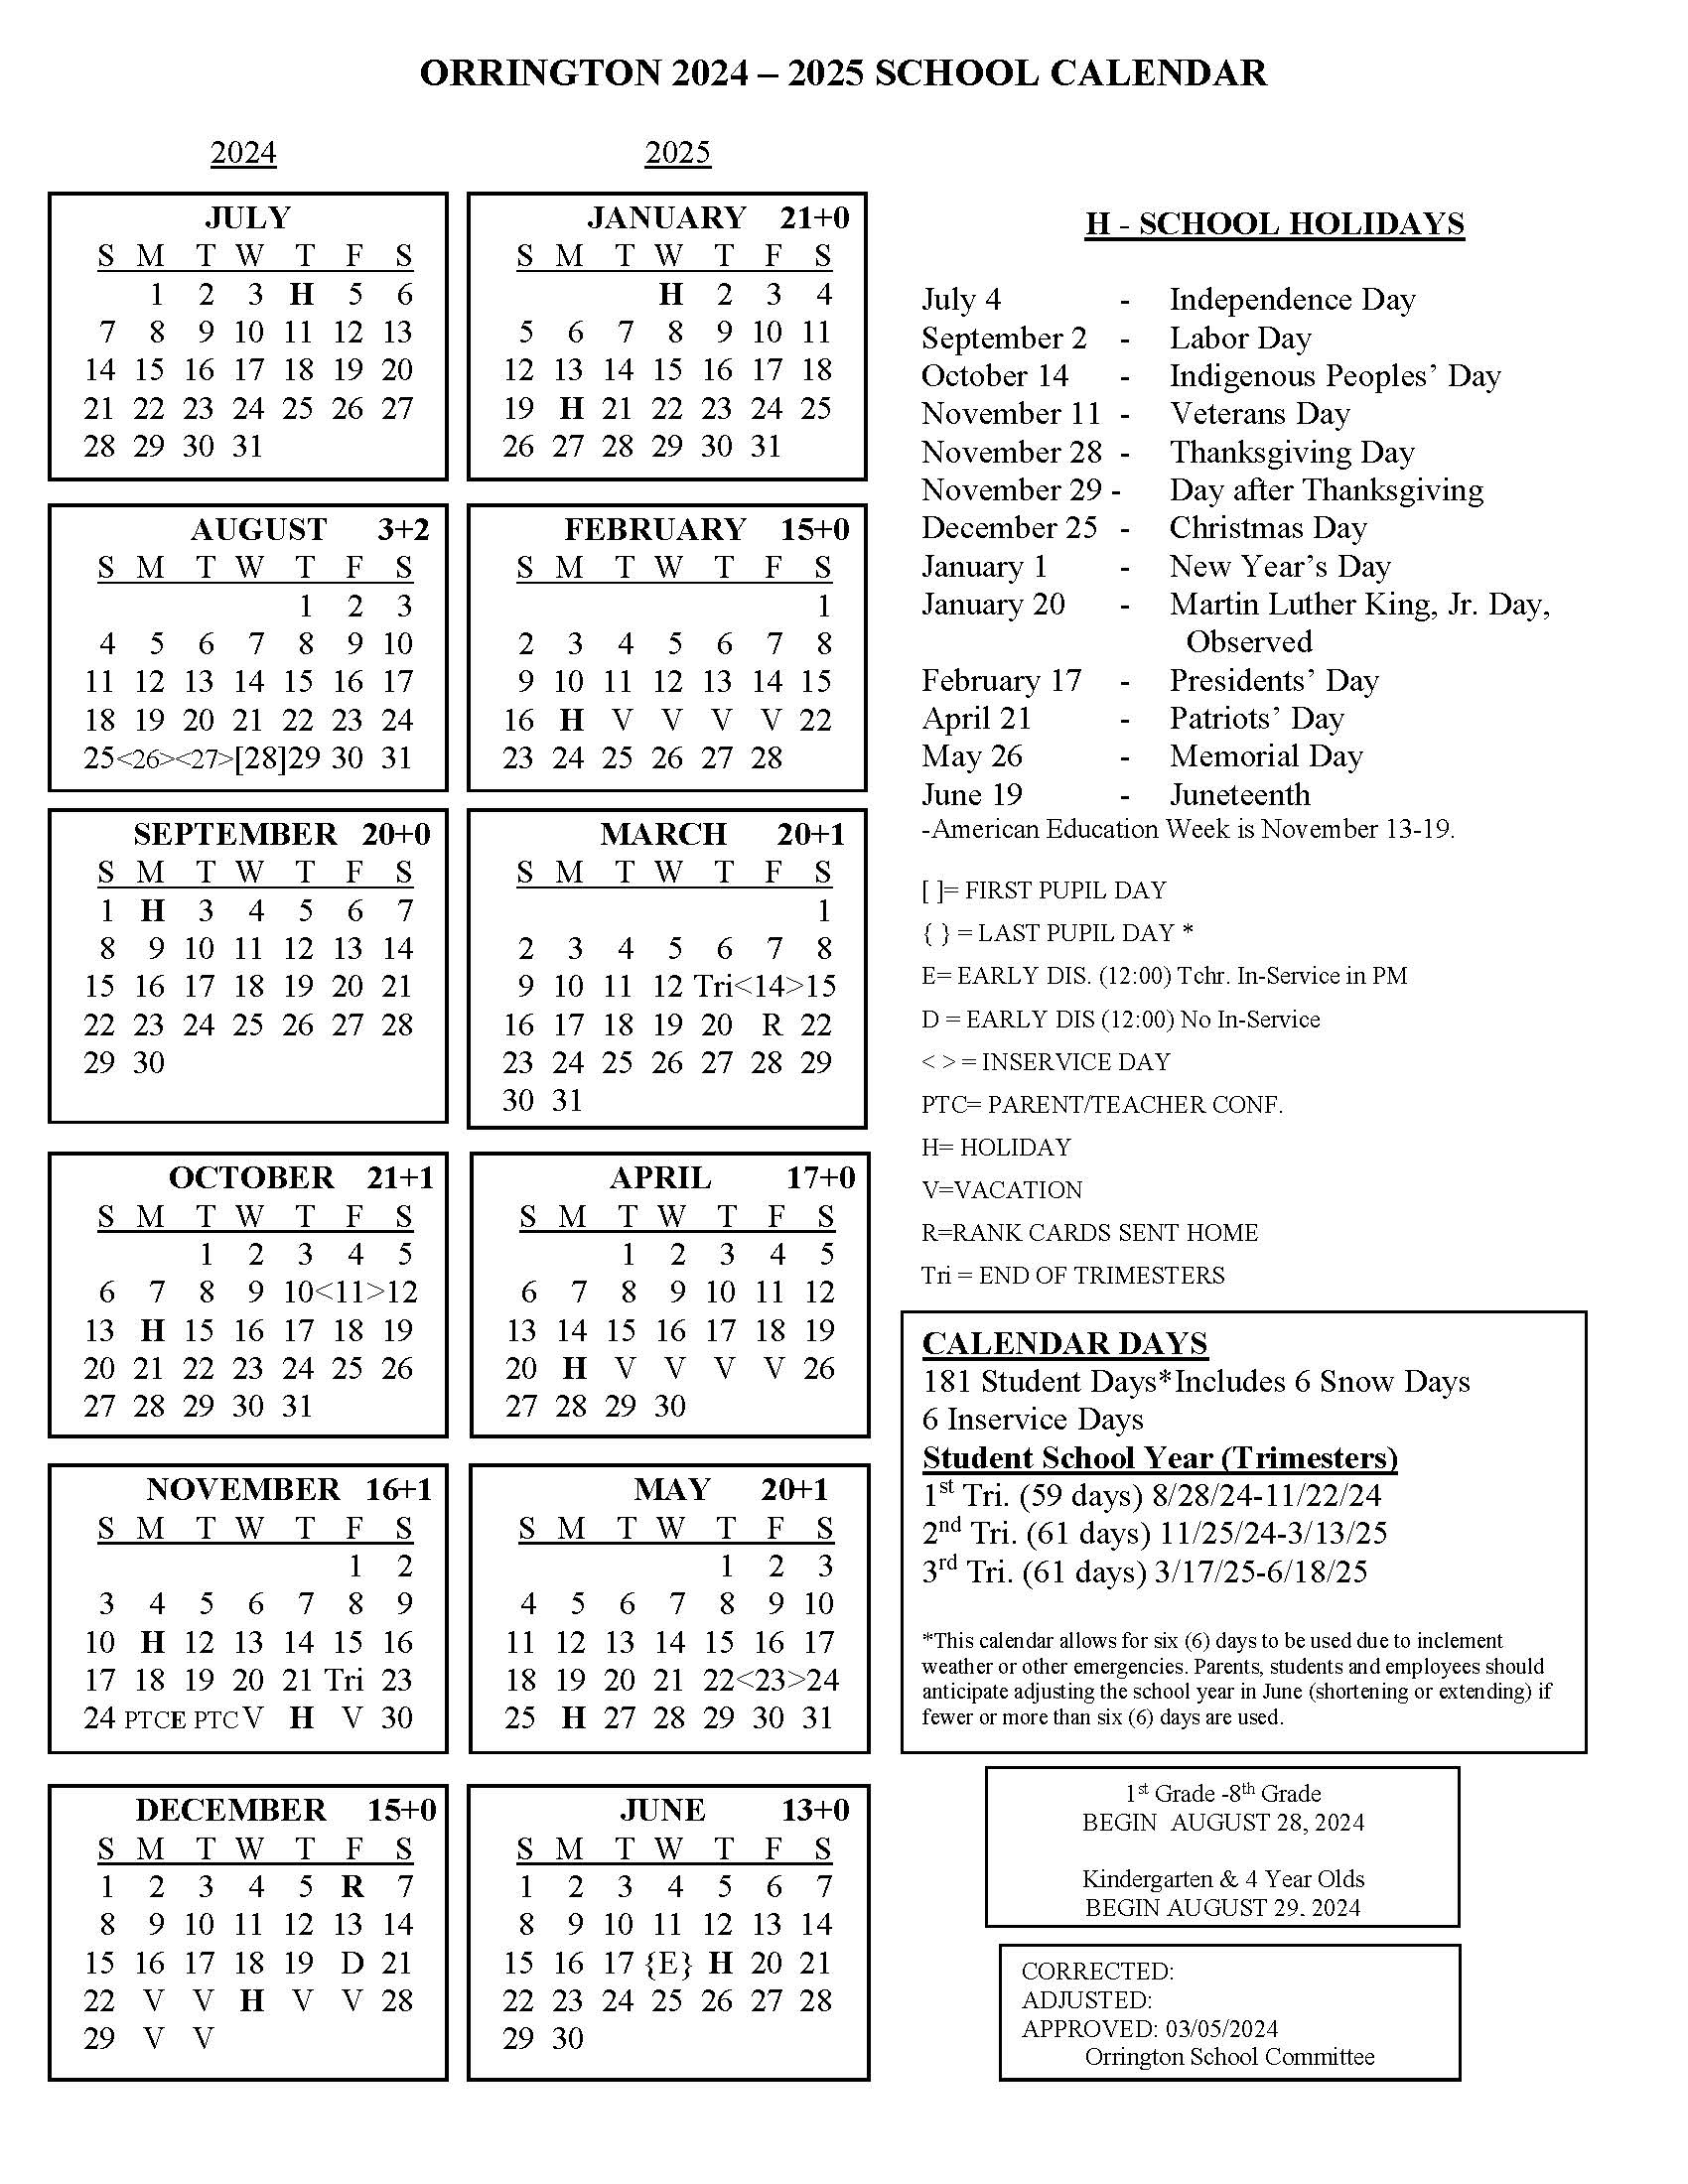 school year calendar 